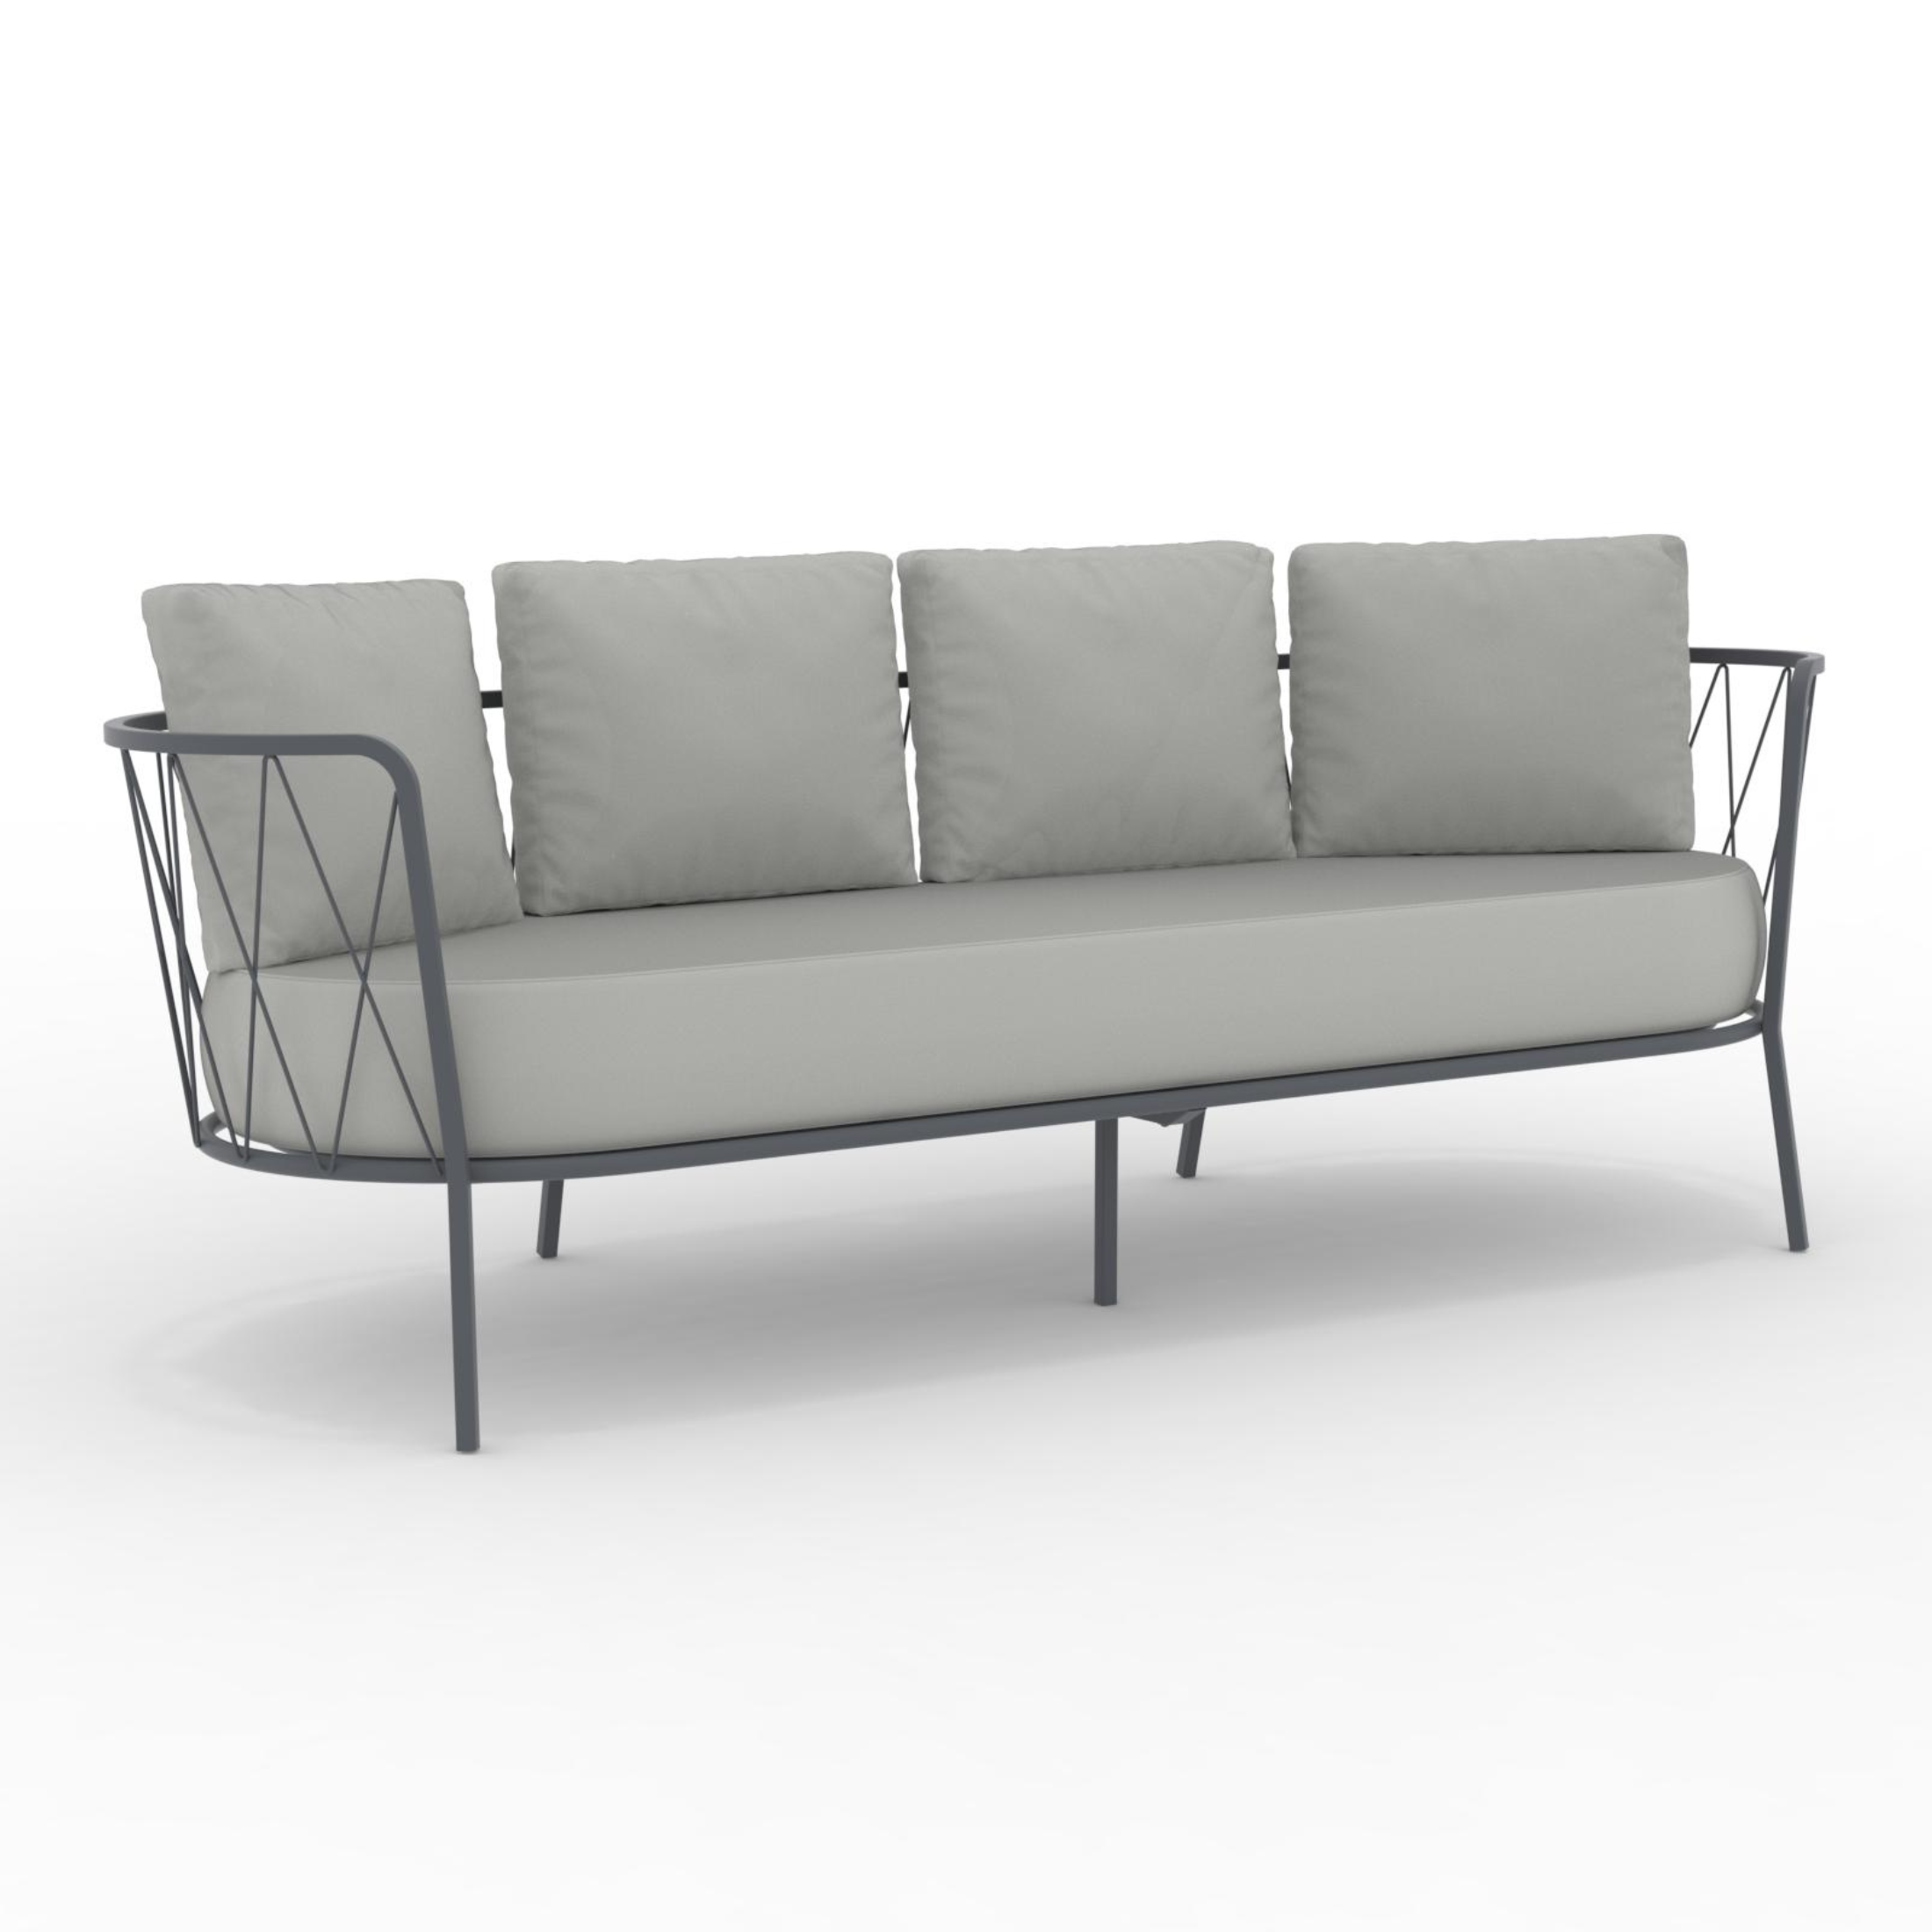 Divano 3 posti in metallo zincato "Daisy14" sofà lounge da giardino cm 220x80 71h